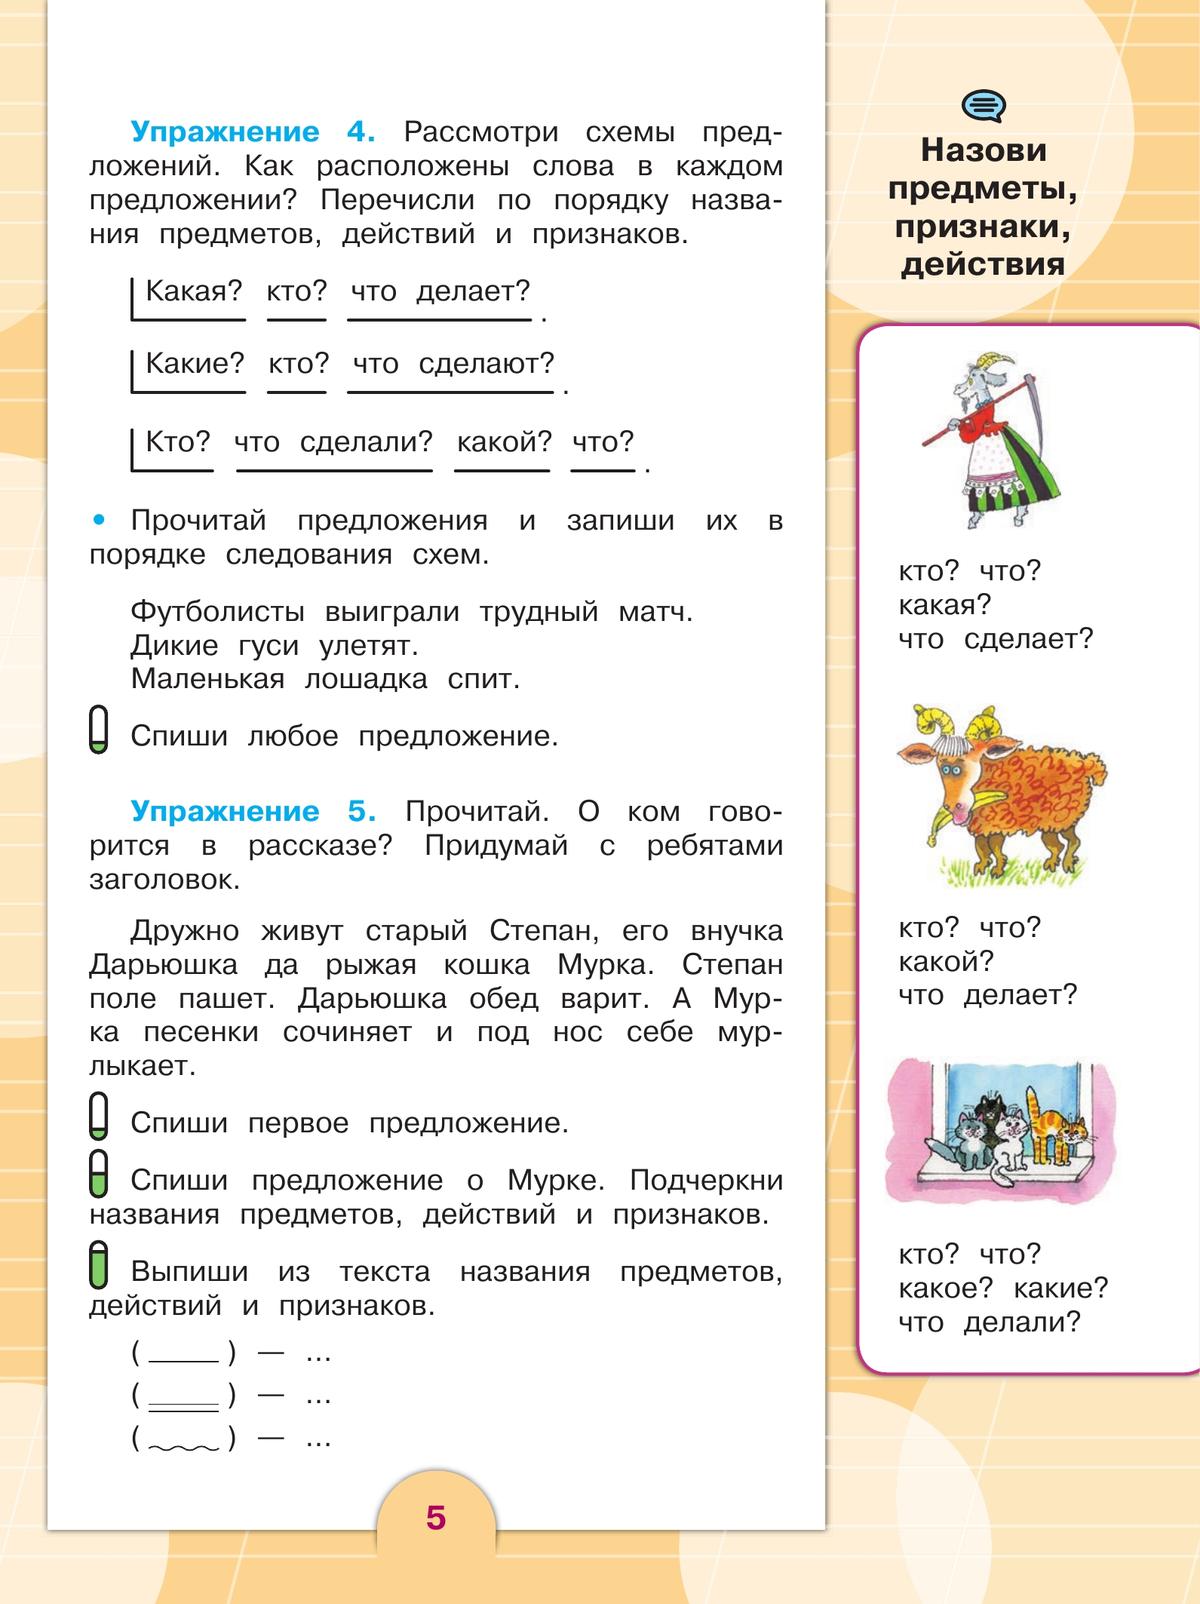 Русский язык. 4 класс. Учебник. В 2 ч. Часть 2 (для обучающихся с интеллектуальными нарушениями) 7